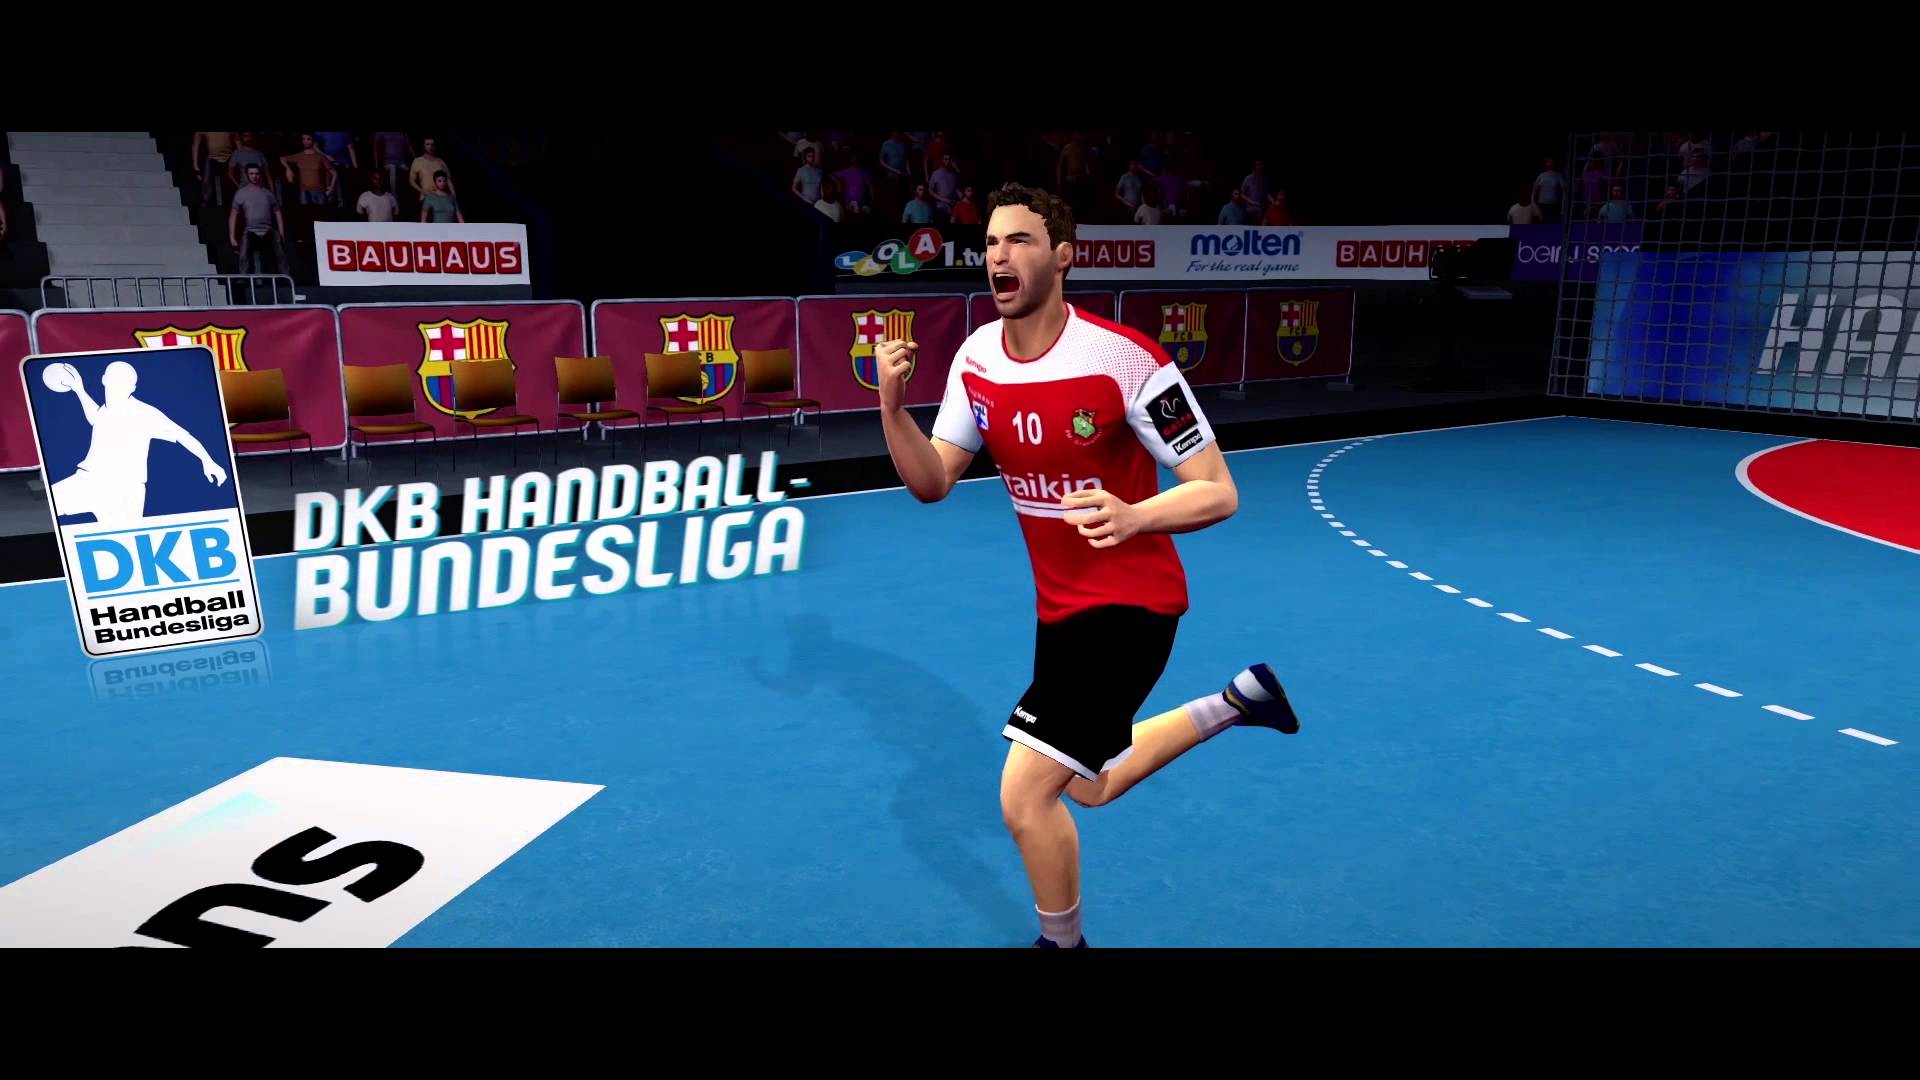 Handball 16 | Das neue Spiel für alle Konsolen